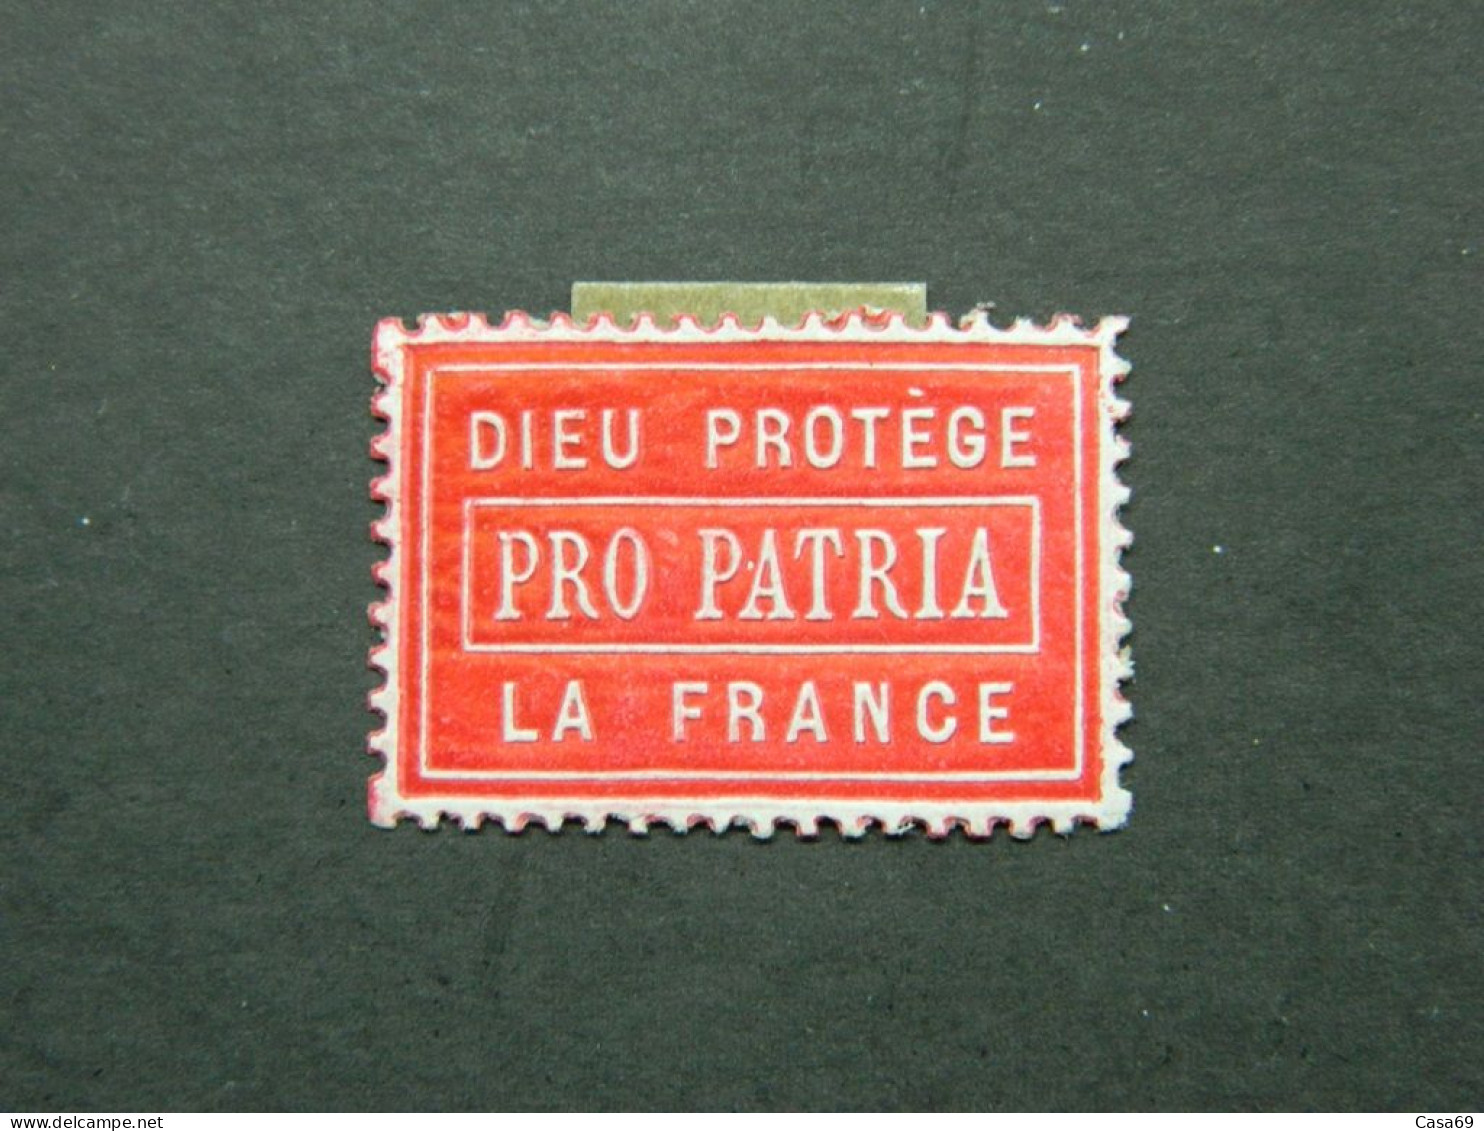 Vignette Militaire De Propagande En Relief Pro Patria Dieu Protège La France - Military Heritage